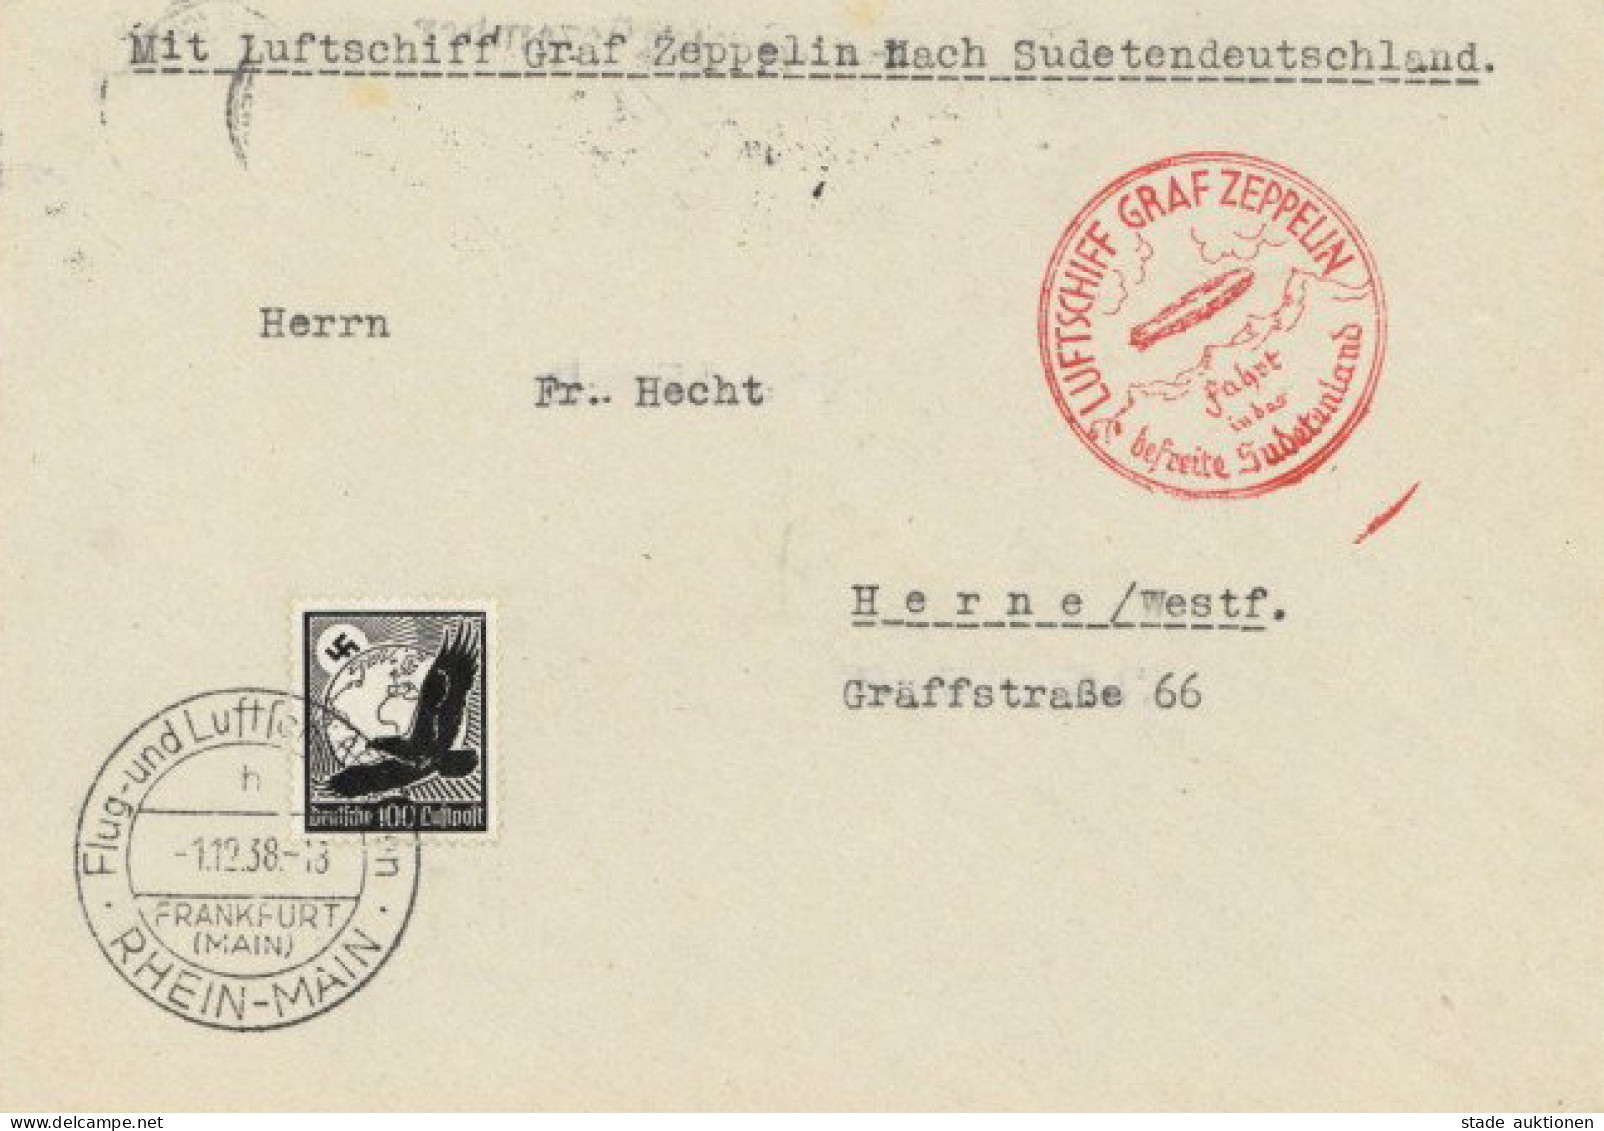 ZEPPELIN-BRIEF Sieger 456 - SUDETENLANDFAHRT 1938 I - Dirigibili